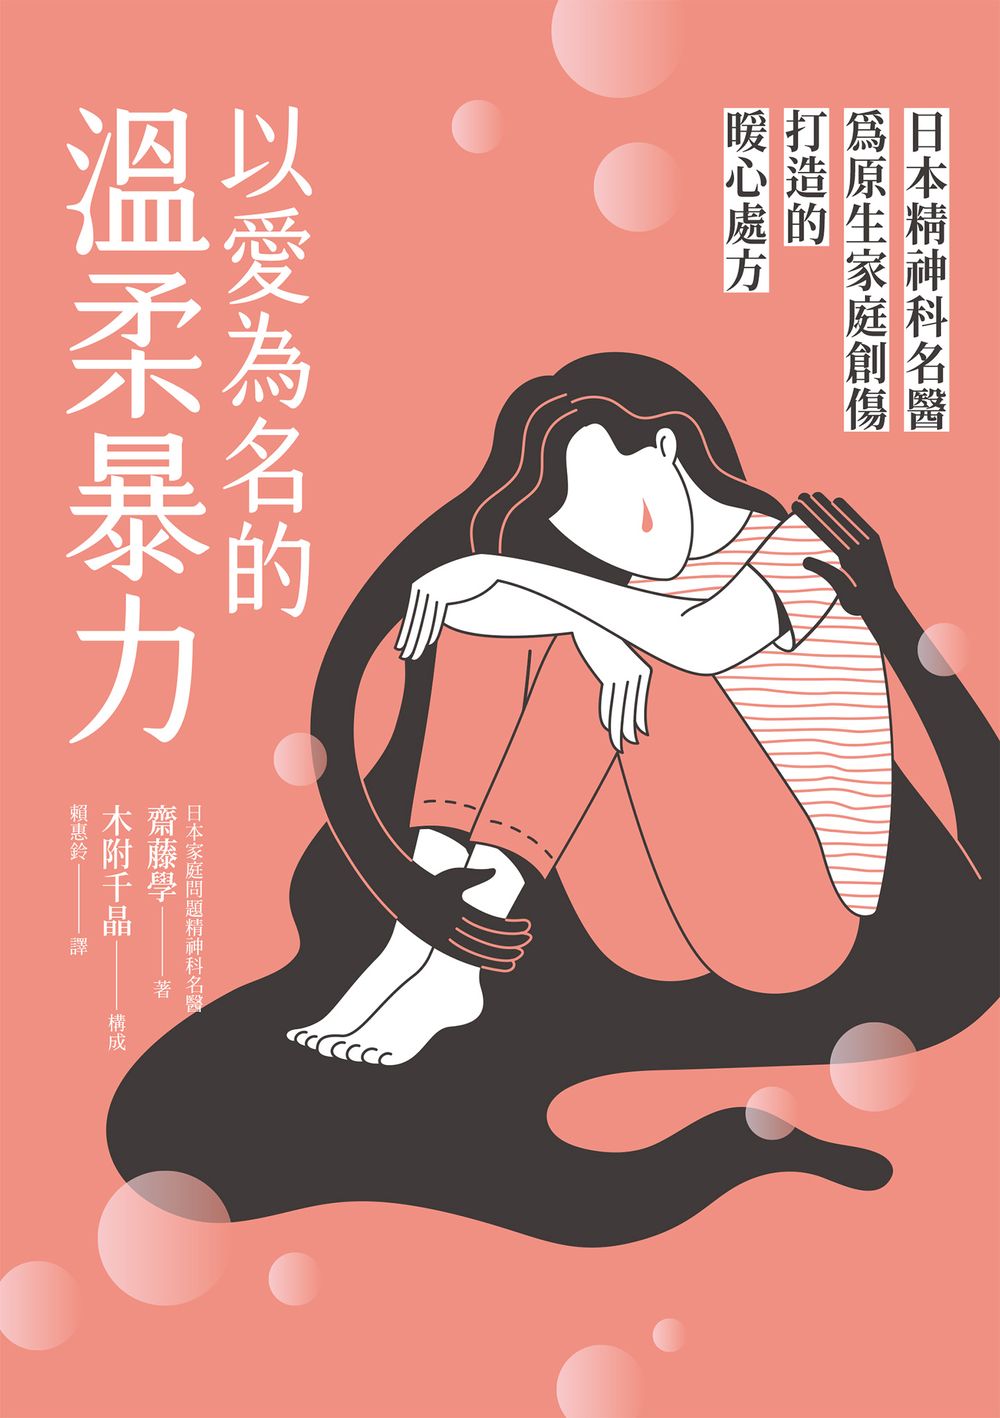 以愛為名的溫柔暴力：日本精神科名醫為原生家庭創傷打造的暖心處方 